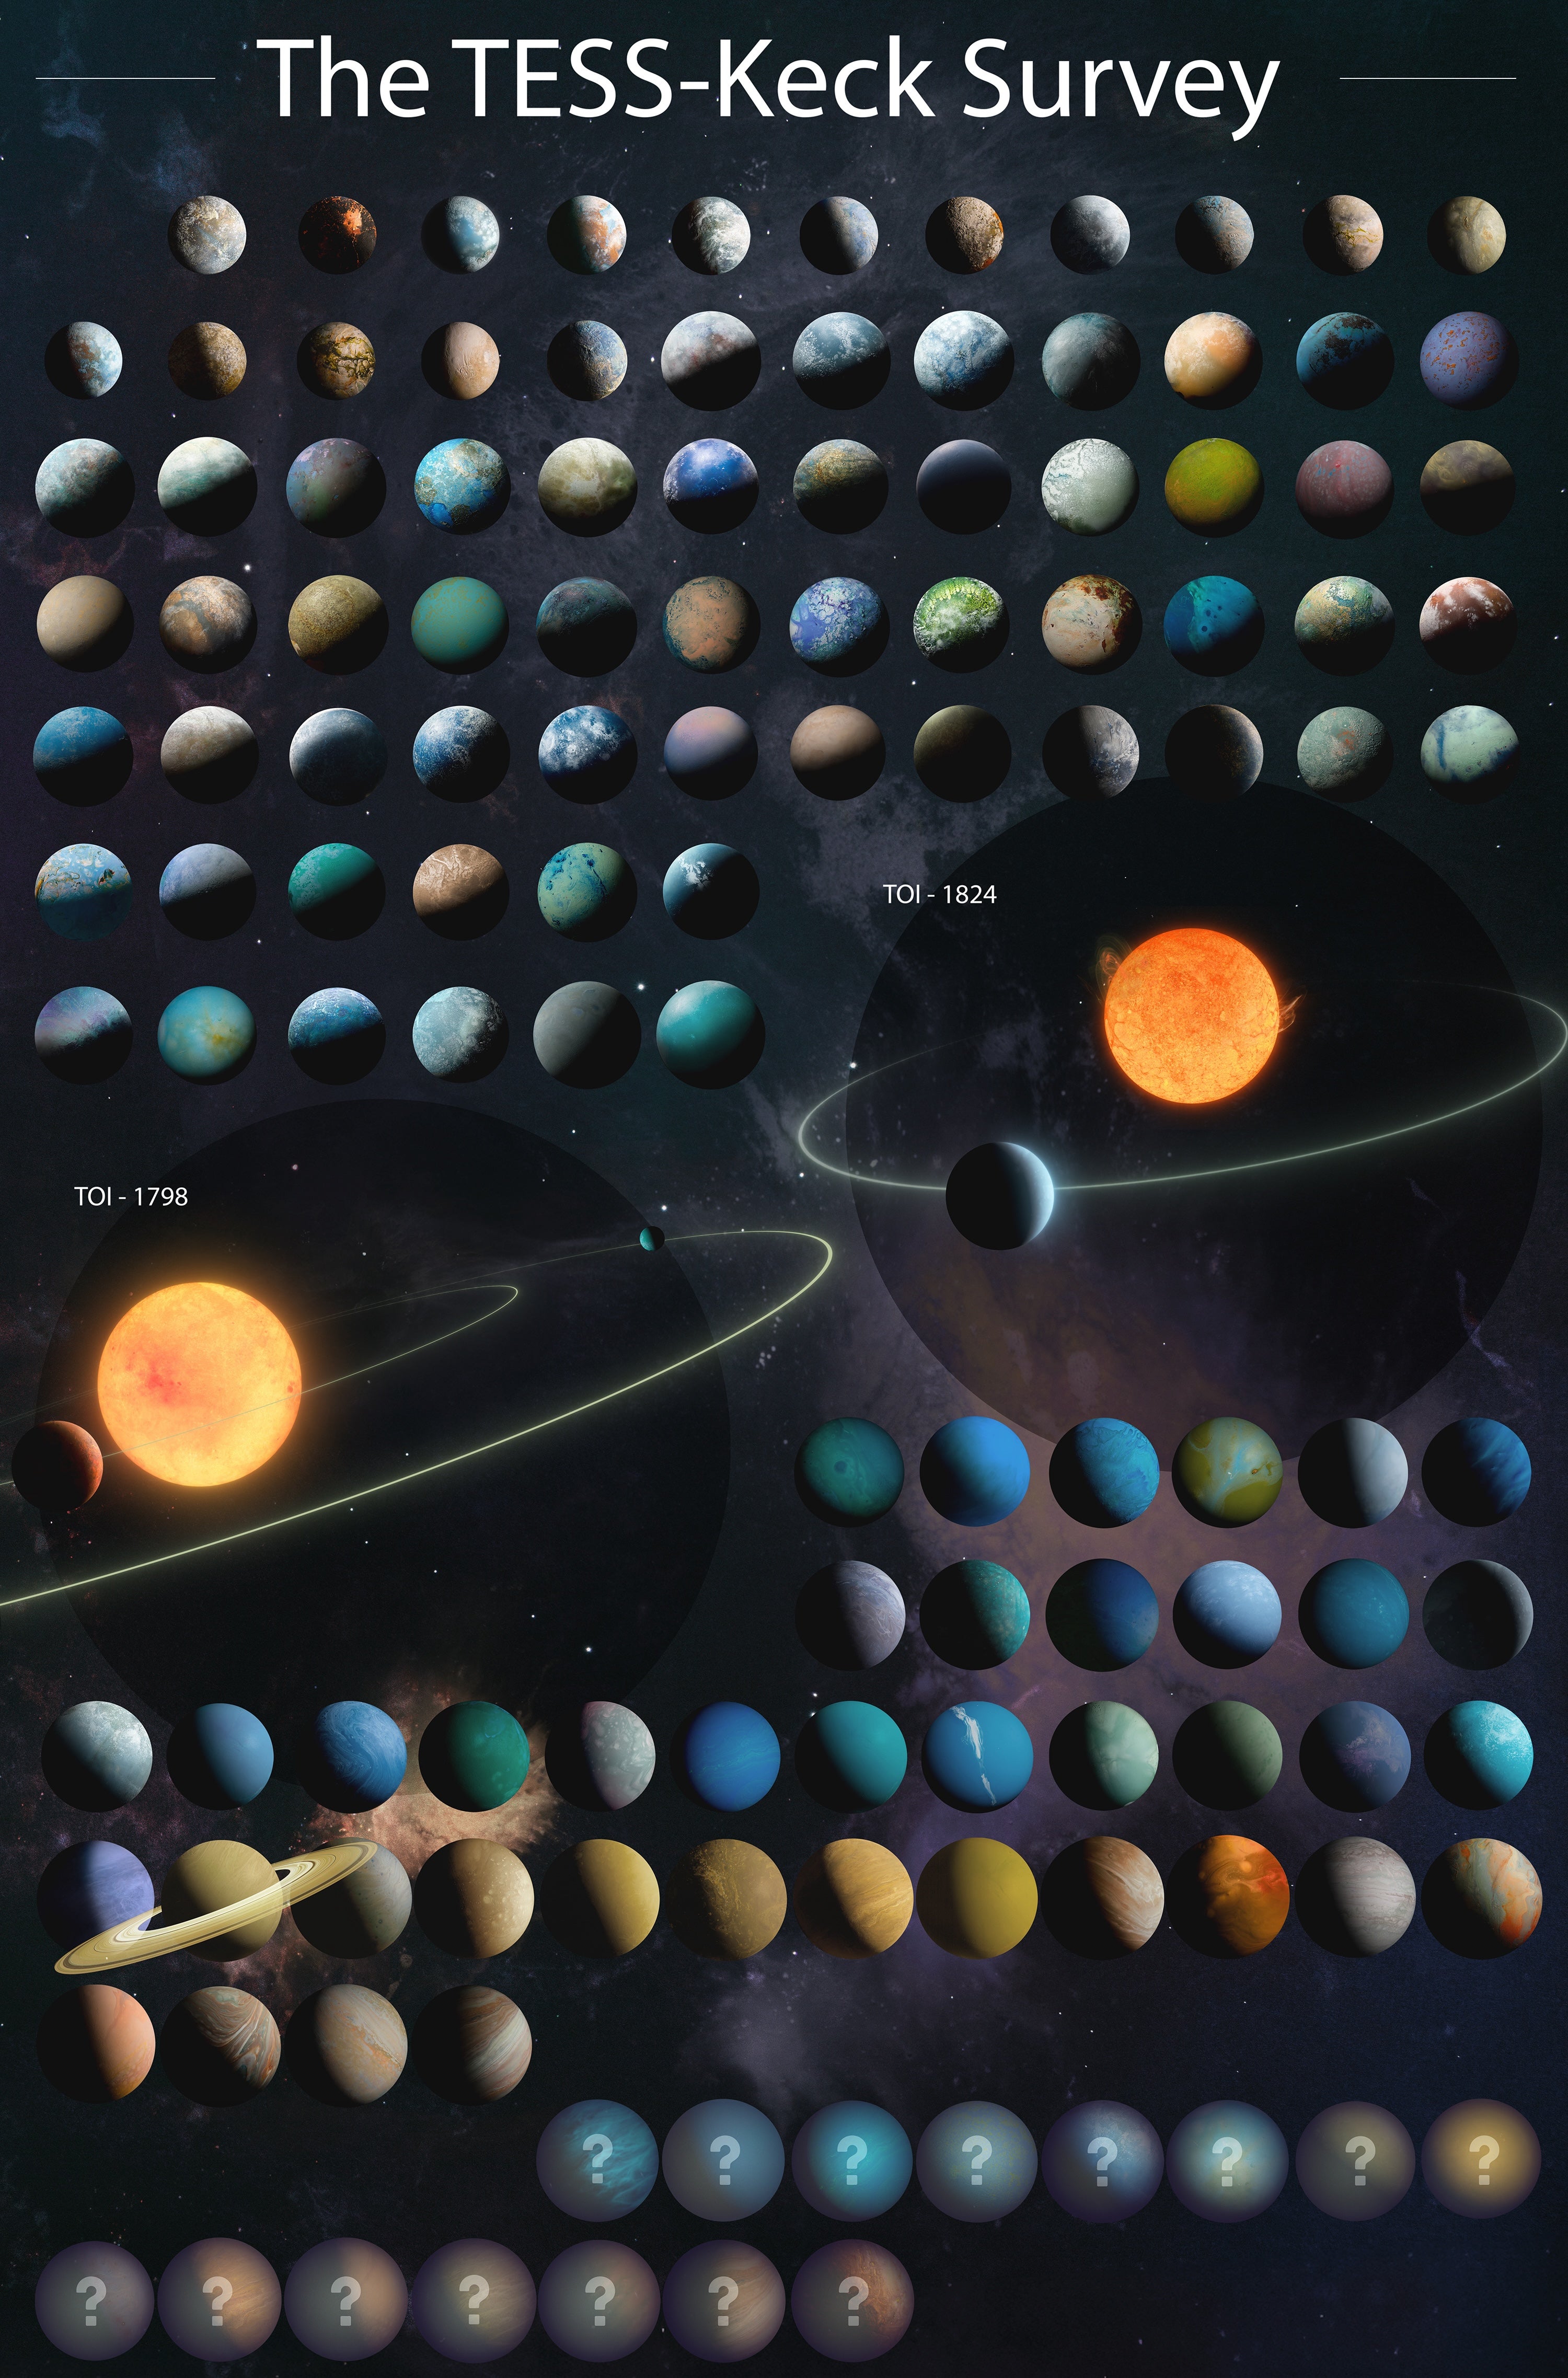 La concepción artística de 126 planetas en el último catálogo de TESS-Keck Survey se basa en datos que incluyen el radio, la masa, la densidad y la temperatura de los planetas. Los signos de interrogación representan planetas que requieren más datos para una caracterización completa.